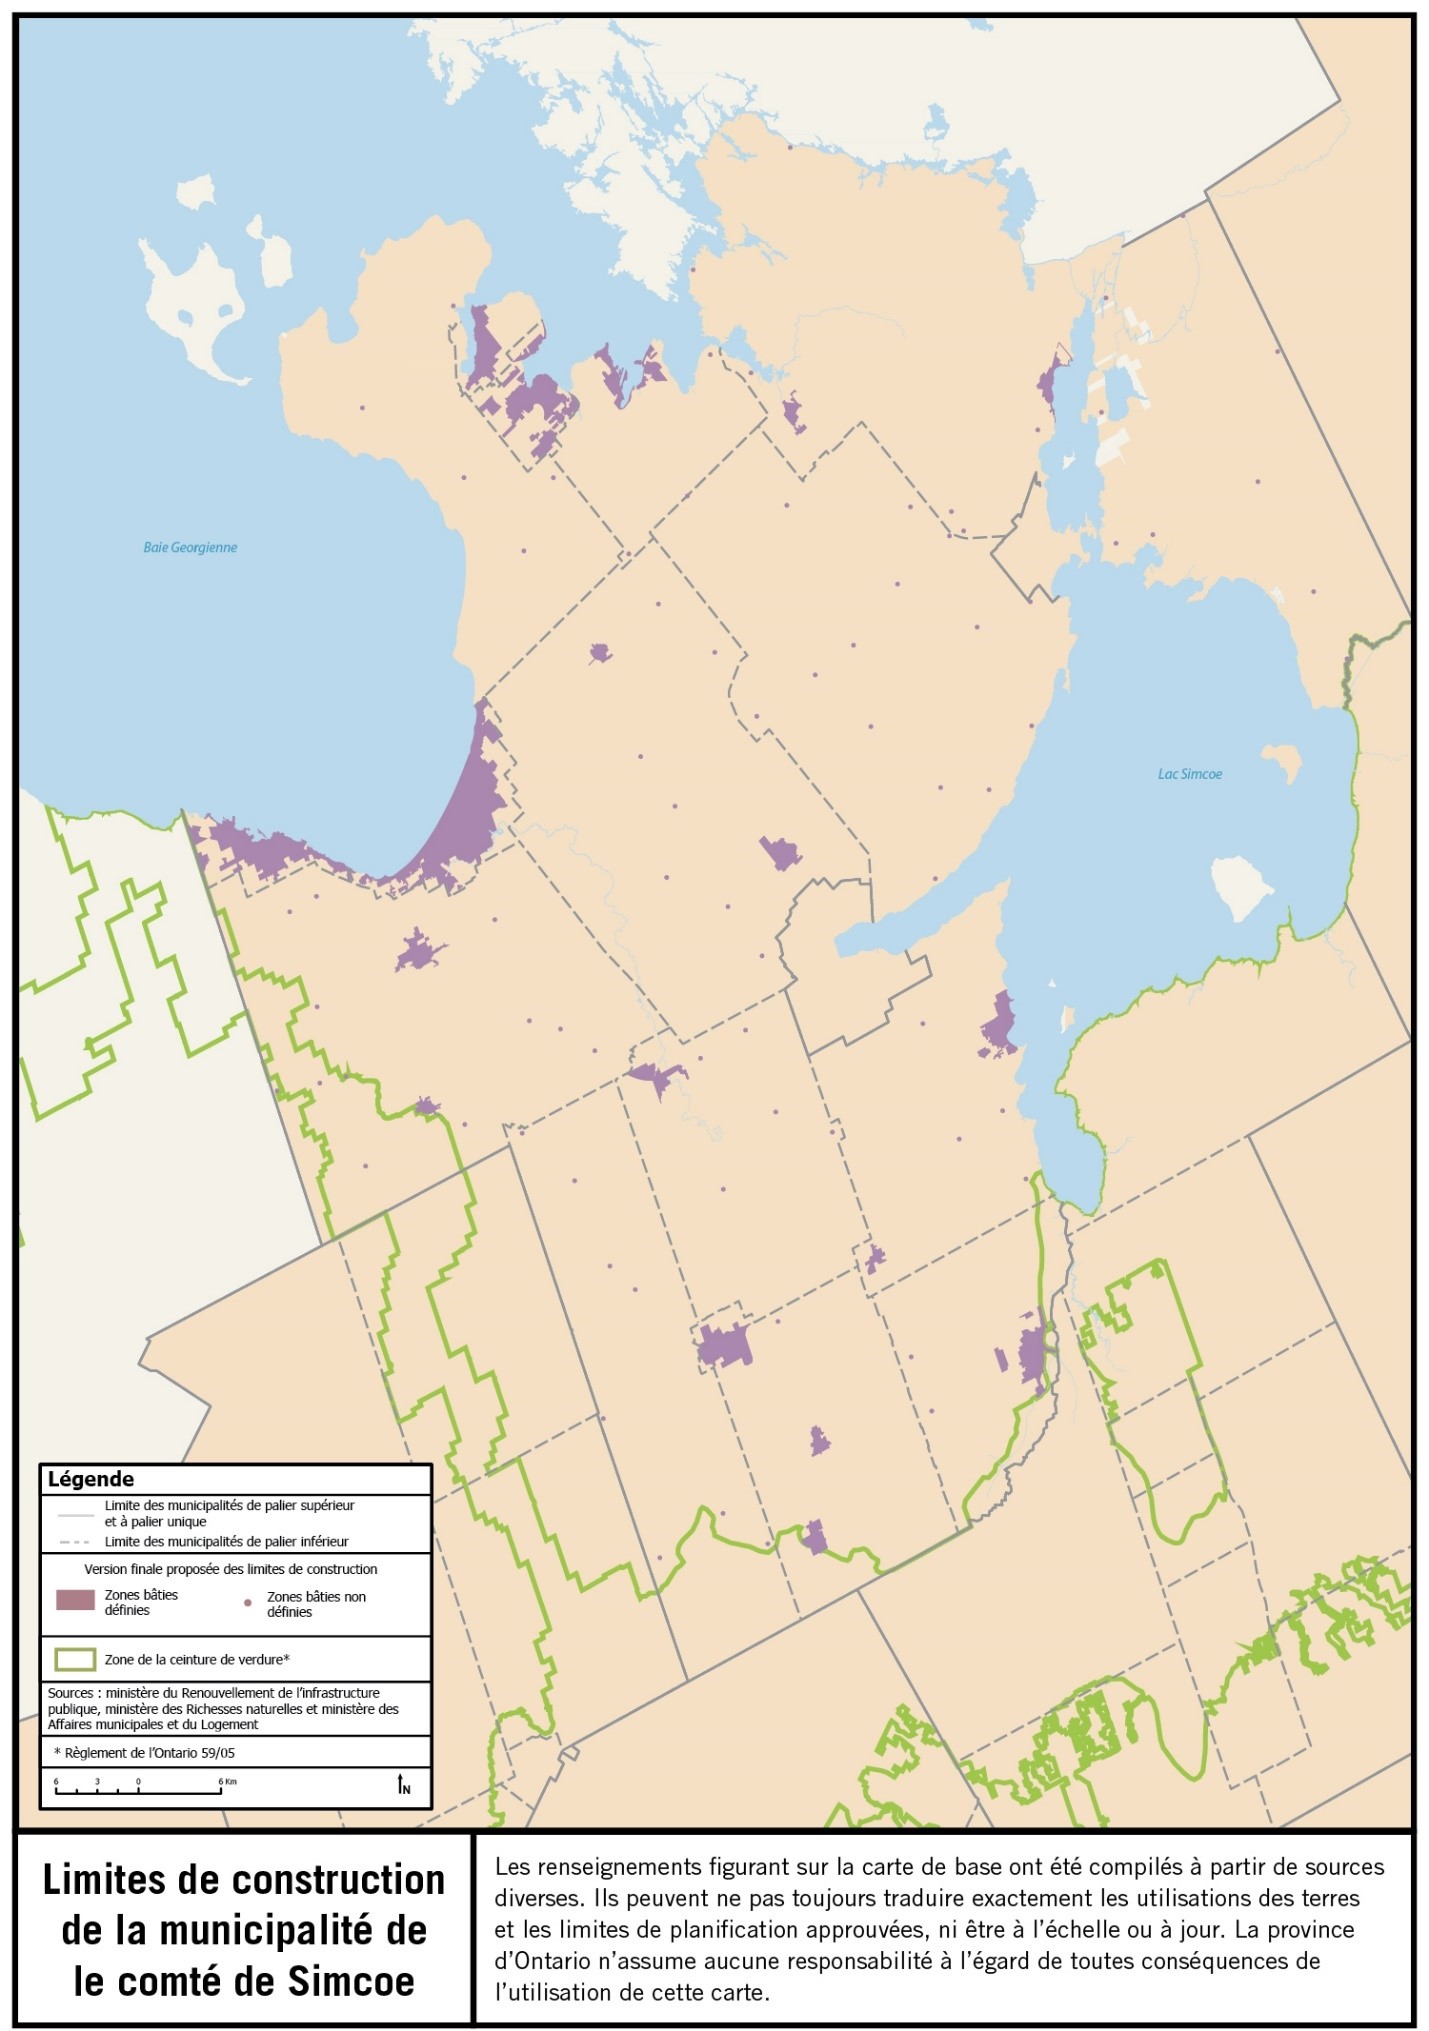 Limites de construction de la municipalité de le comté de Simcoe